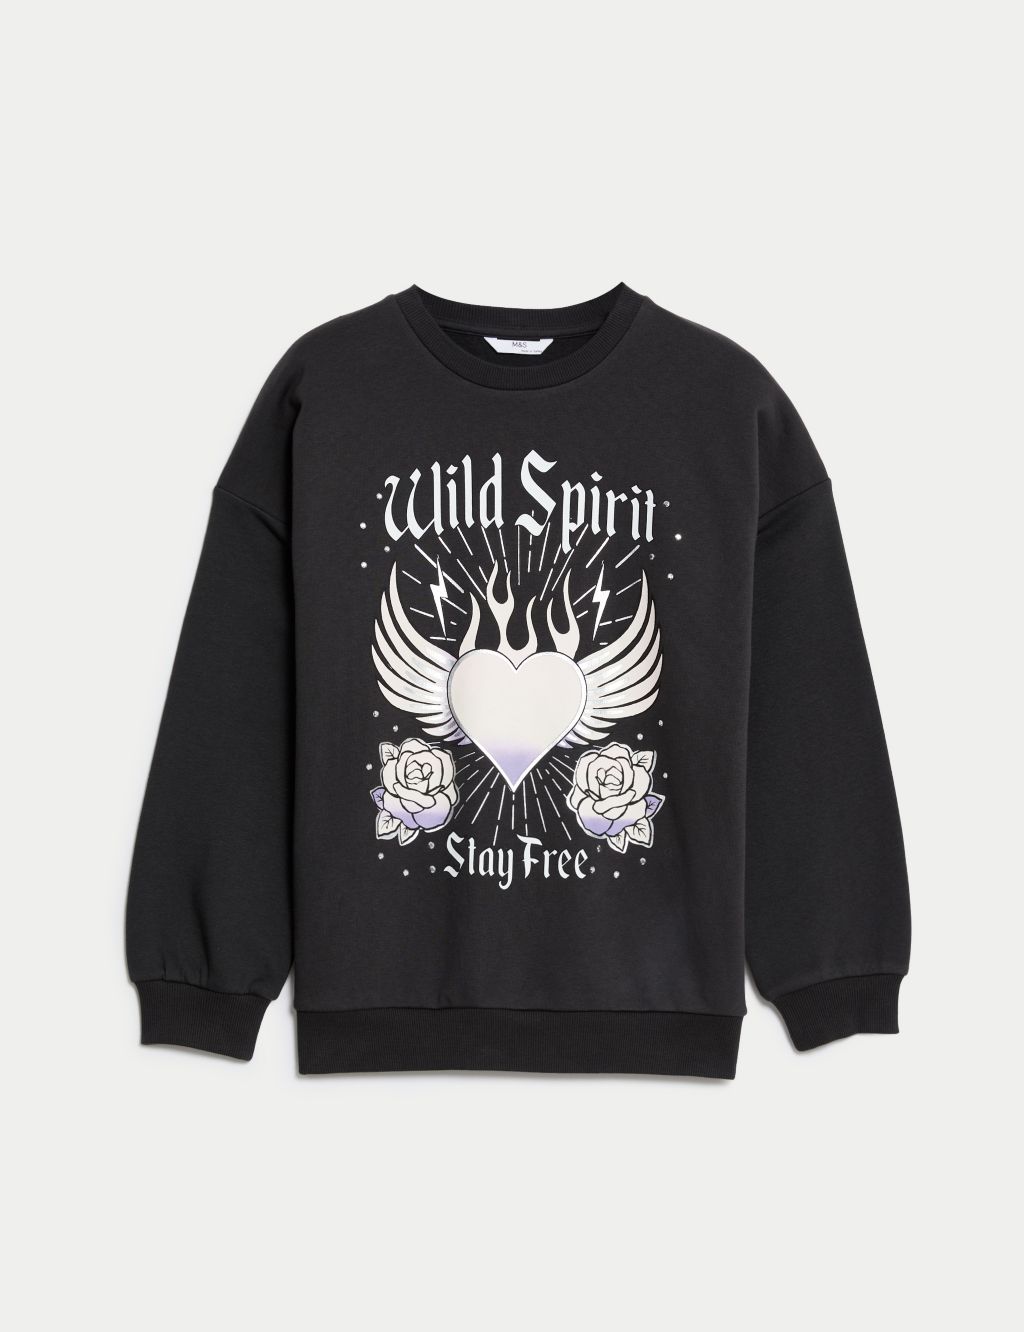 Cotton Rich Wild Spirit Graphic Sweatshirt (6-16 Yrs) image 2